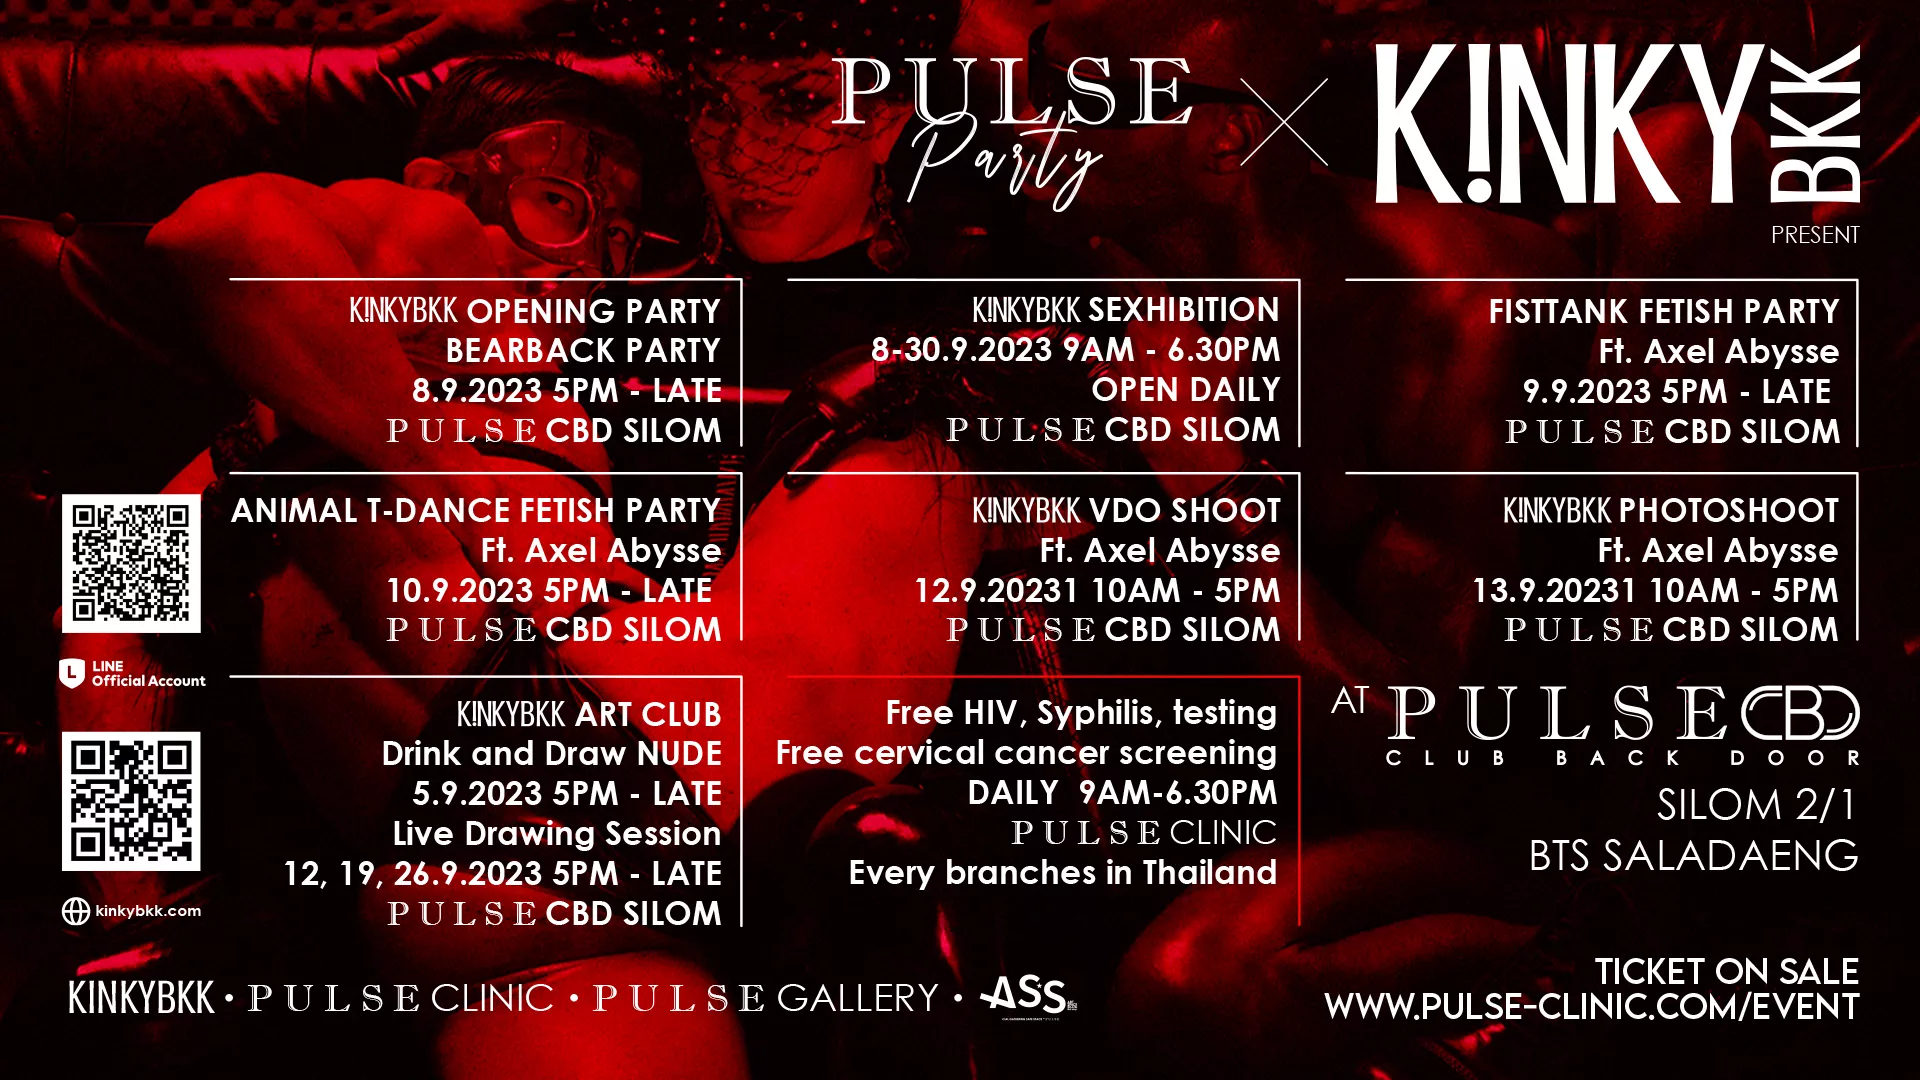 K!NKYBKK - PULSE Kinky Party | PULSExhibiton by PULSE Clinic & PULSE Gallery